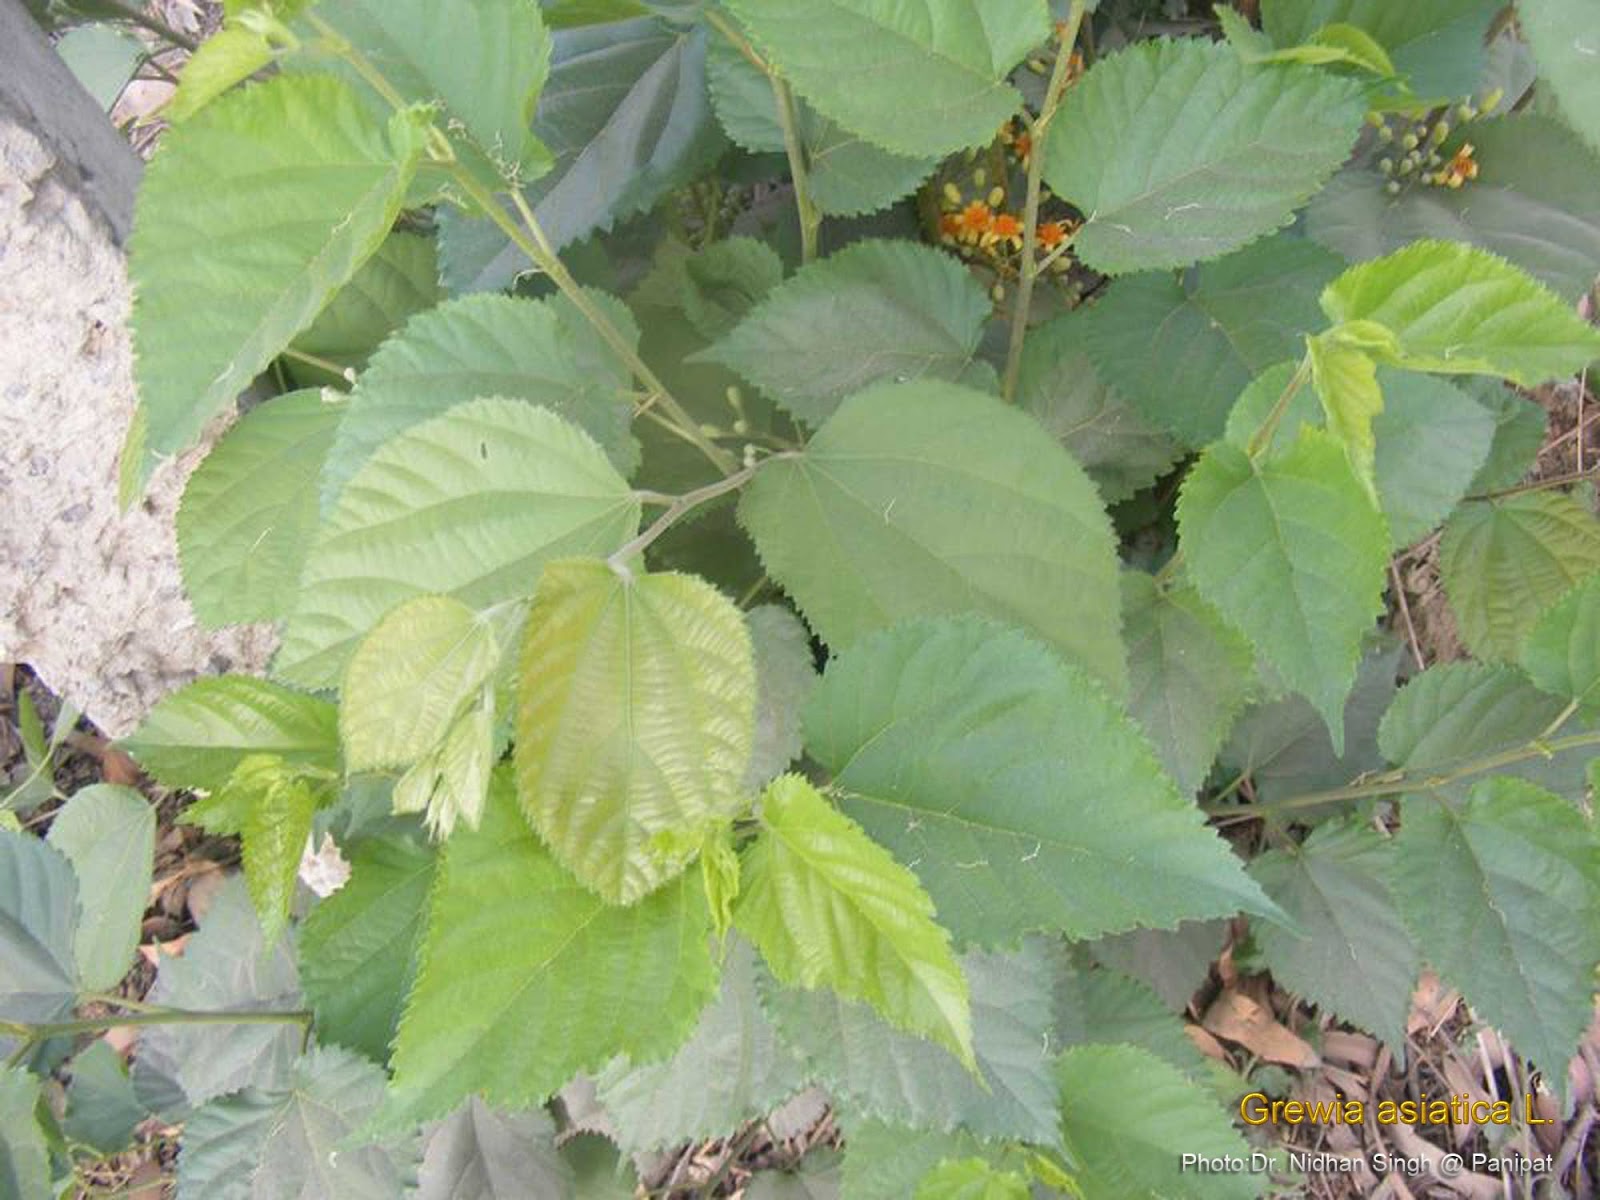 Medicinal Plants Grewia asiatica, Phalsa, palicamaram